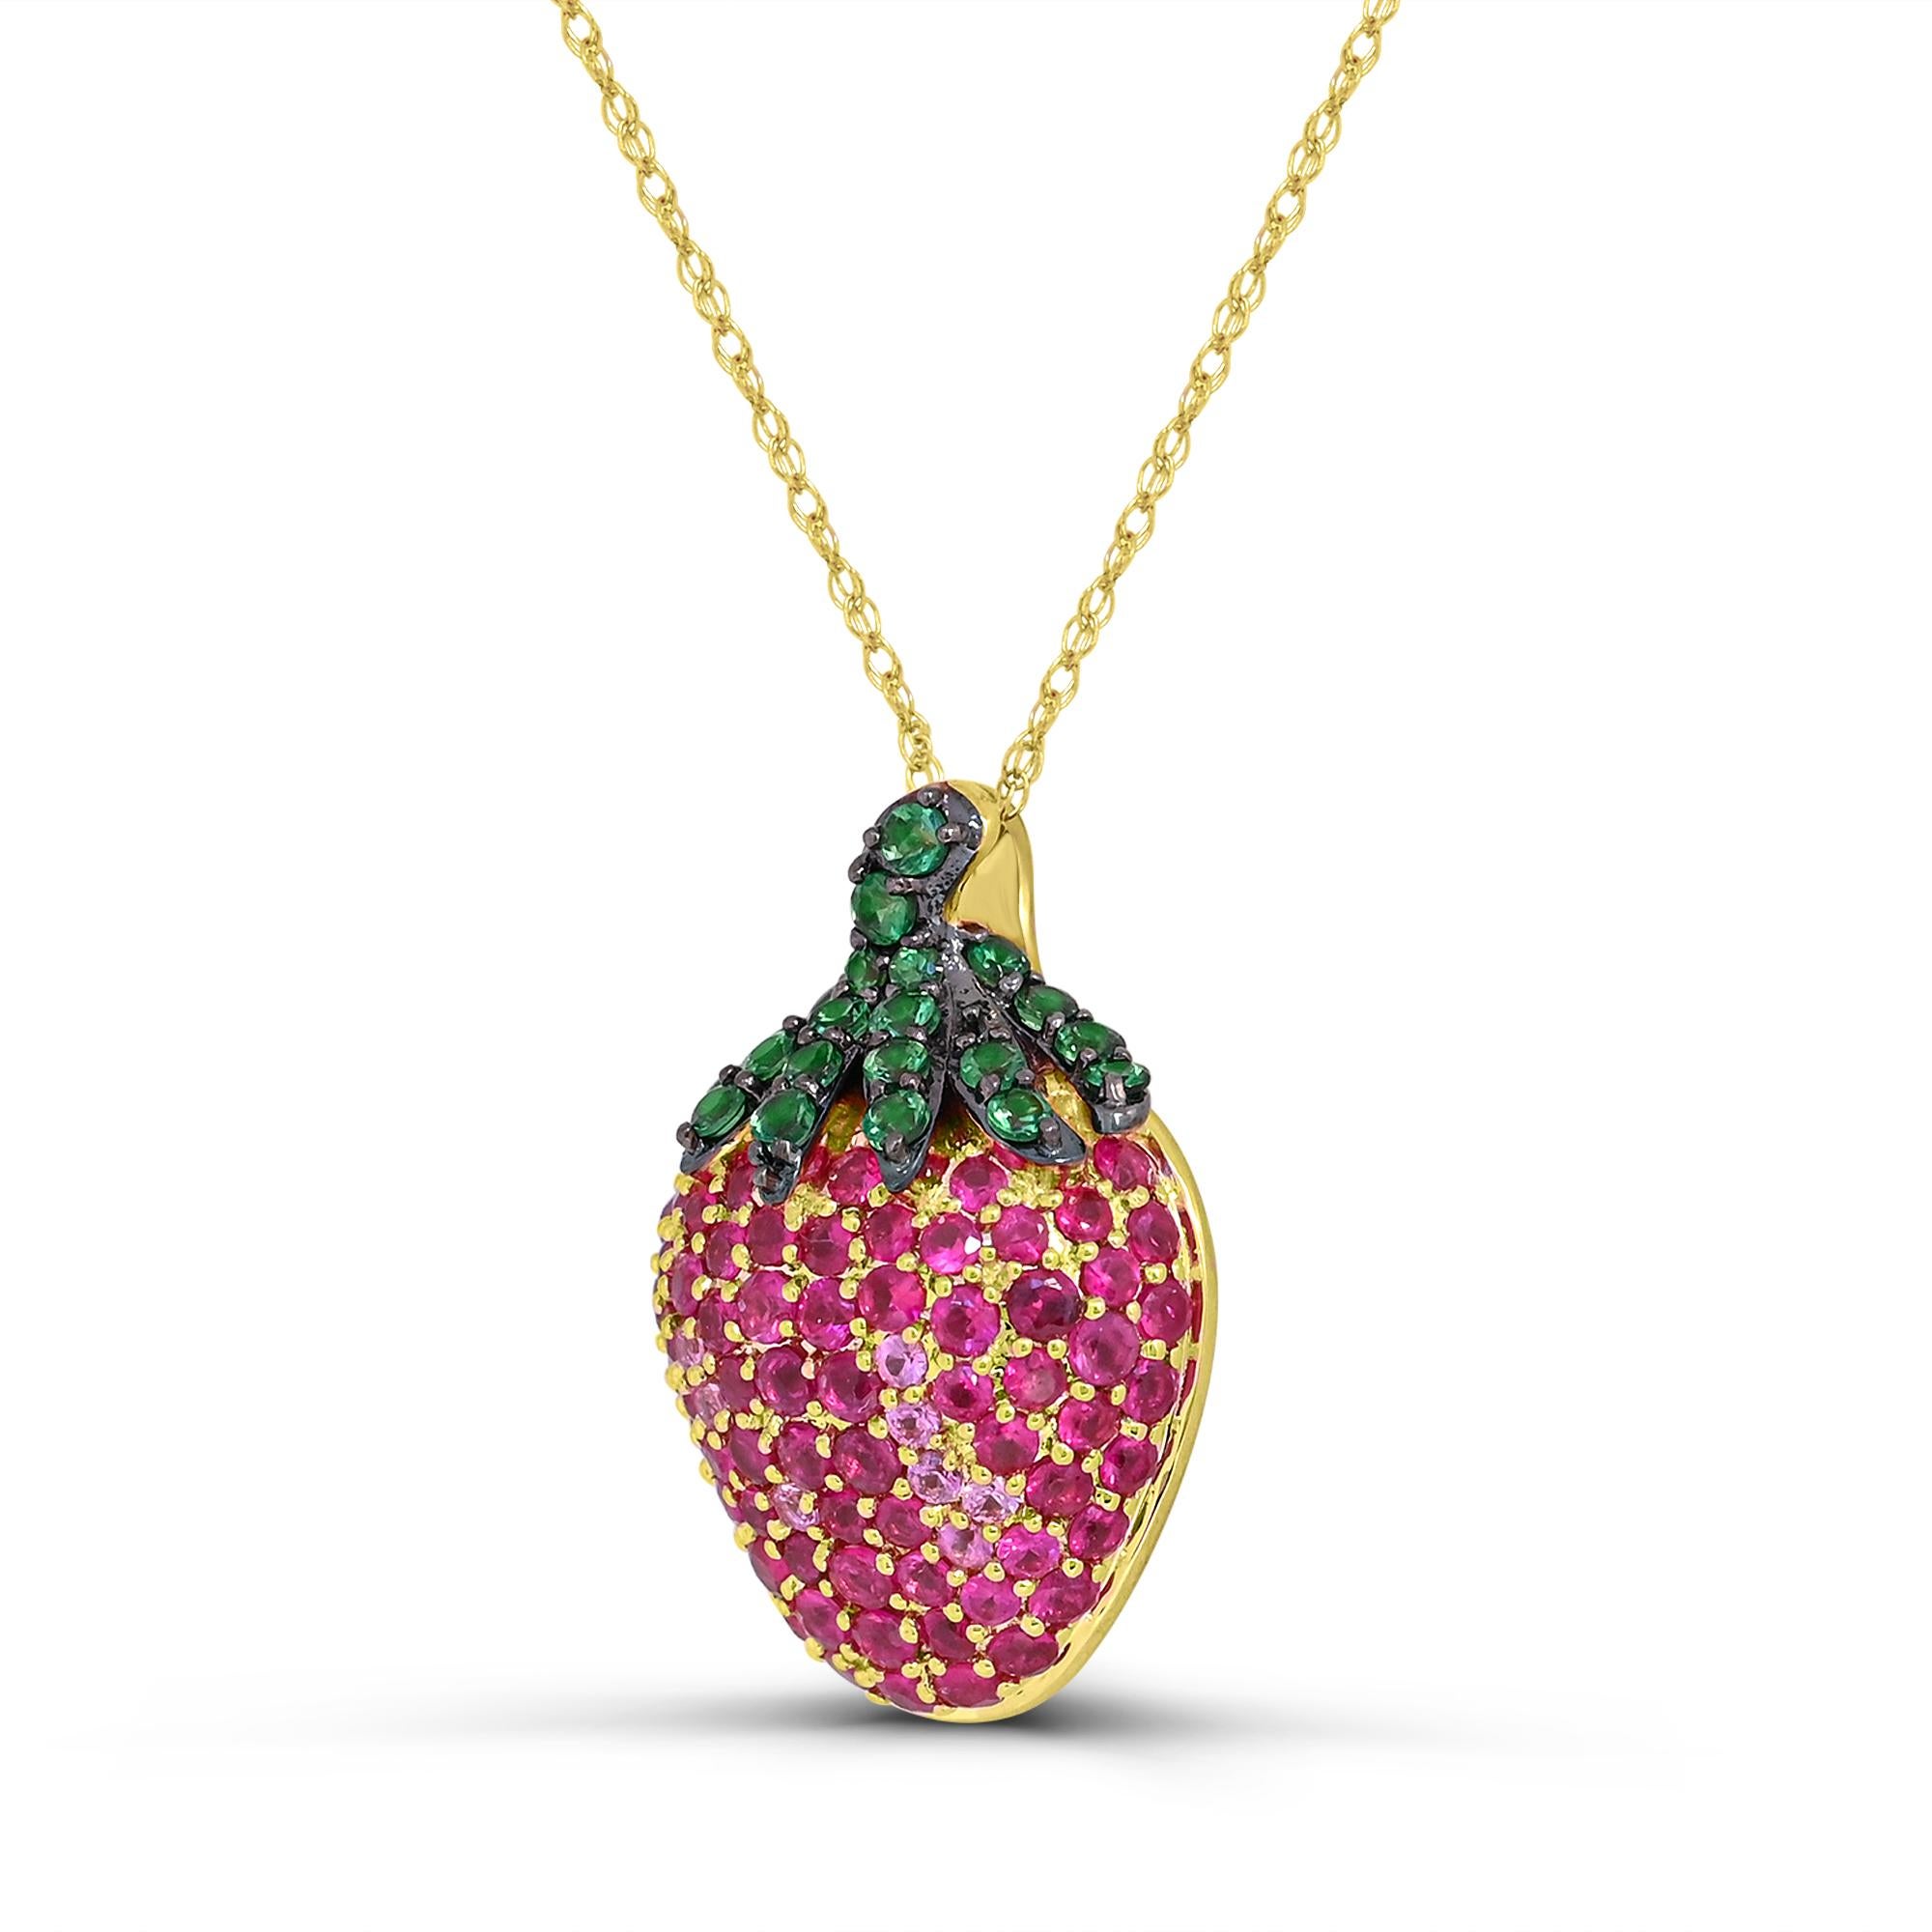 Lassen Sie sich von dem bezaubernden Design unserer Halskette mit Rubin, rosa Saphir und Tsavorit in 14 Karat Gelbgold verzaubern. Dieses mit viel Liebe zum Detail gefertigte Collier besticht durch eine Kombination aus runden Rubinen, funkelnden